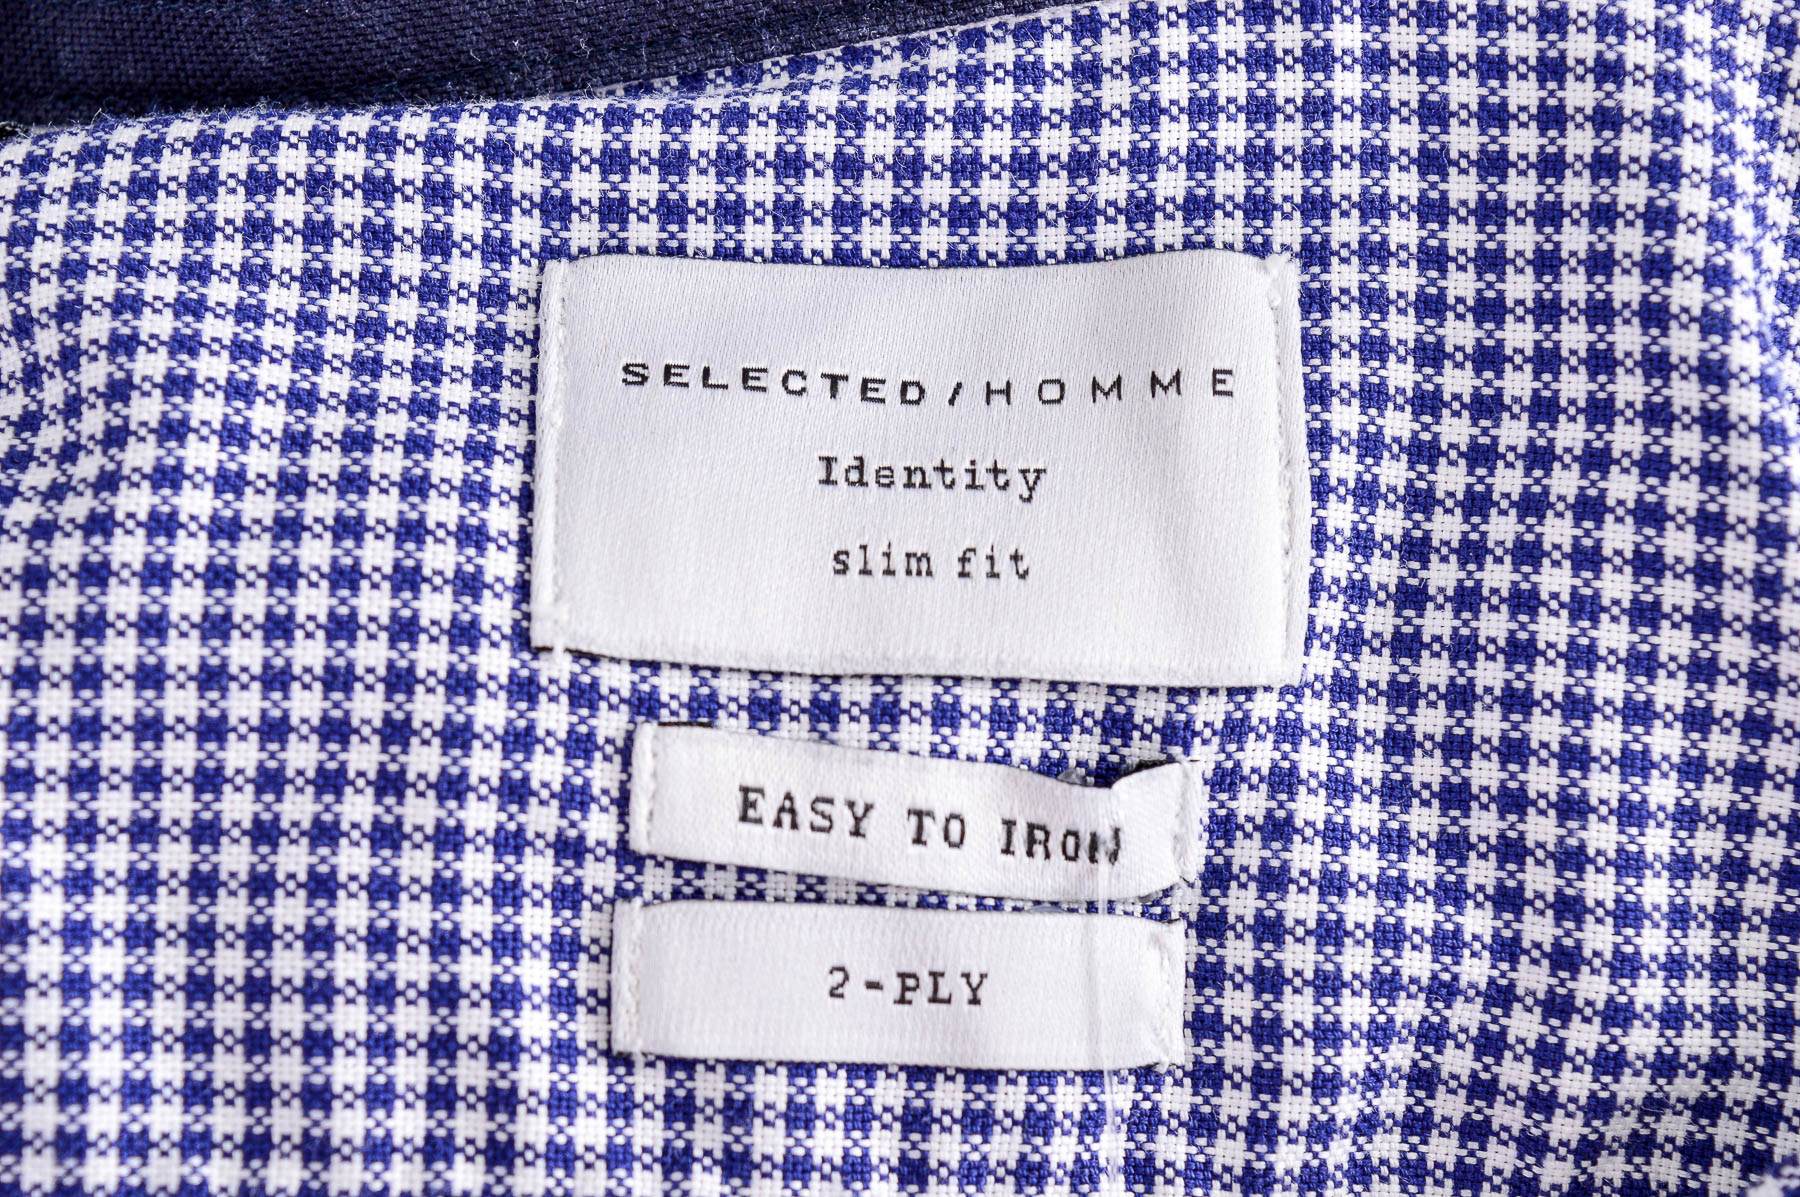 Ανδρικό πουκάμισο - SELECTED / HOMME - 2